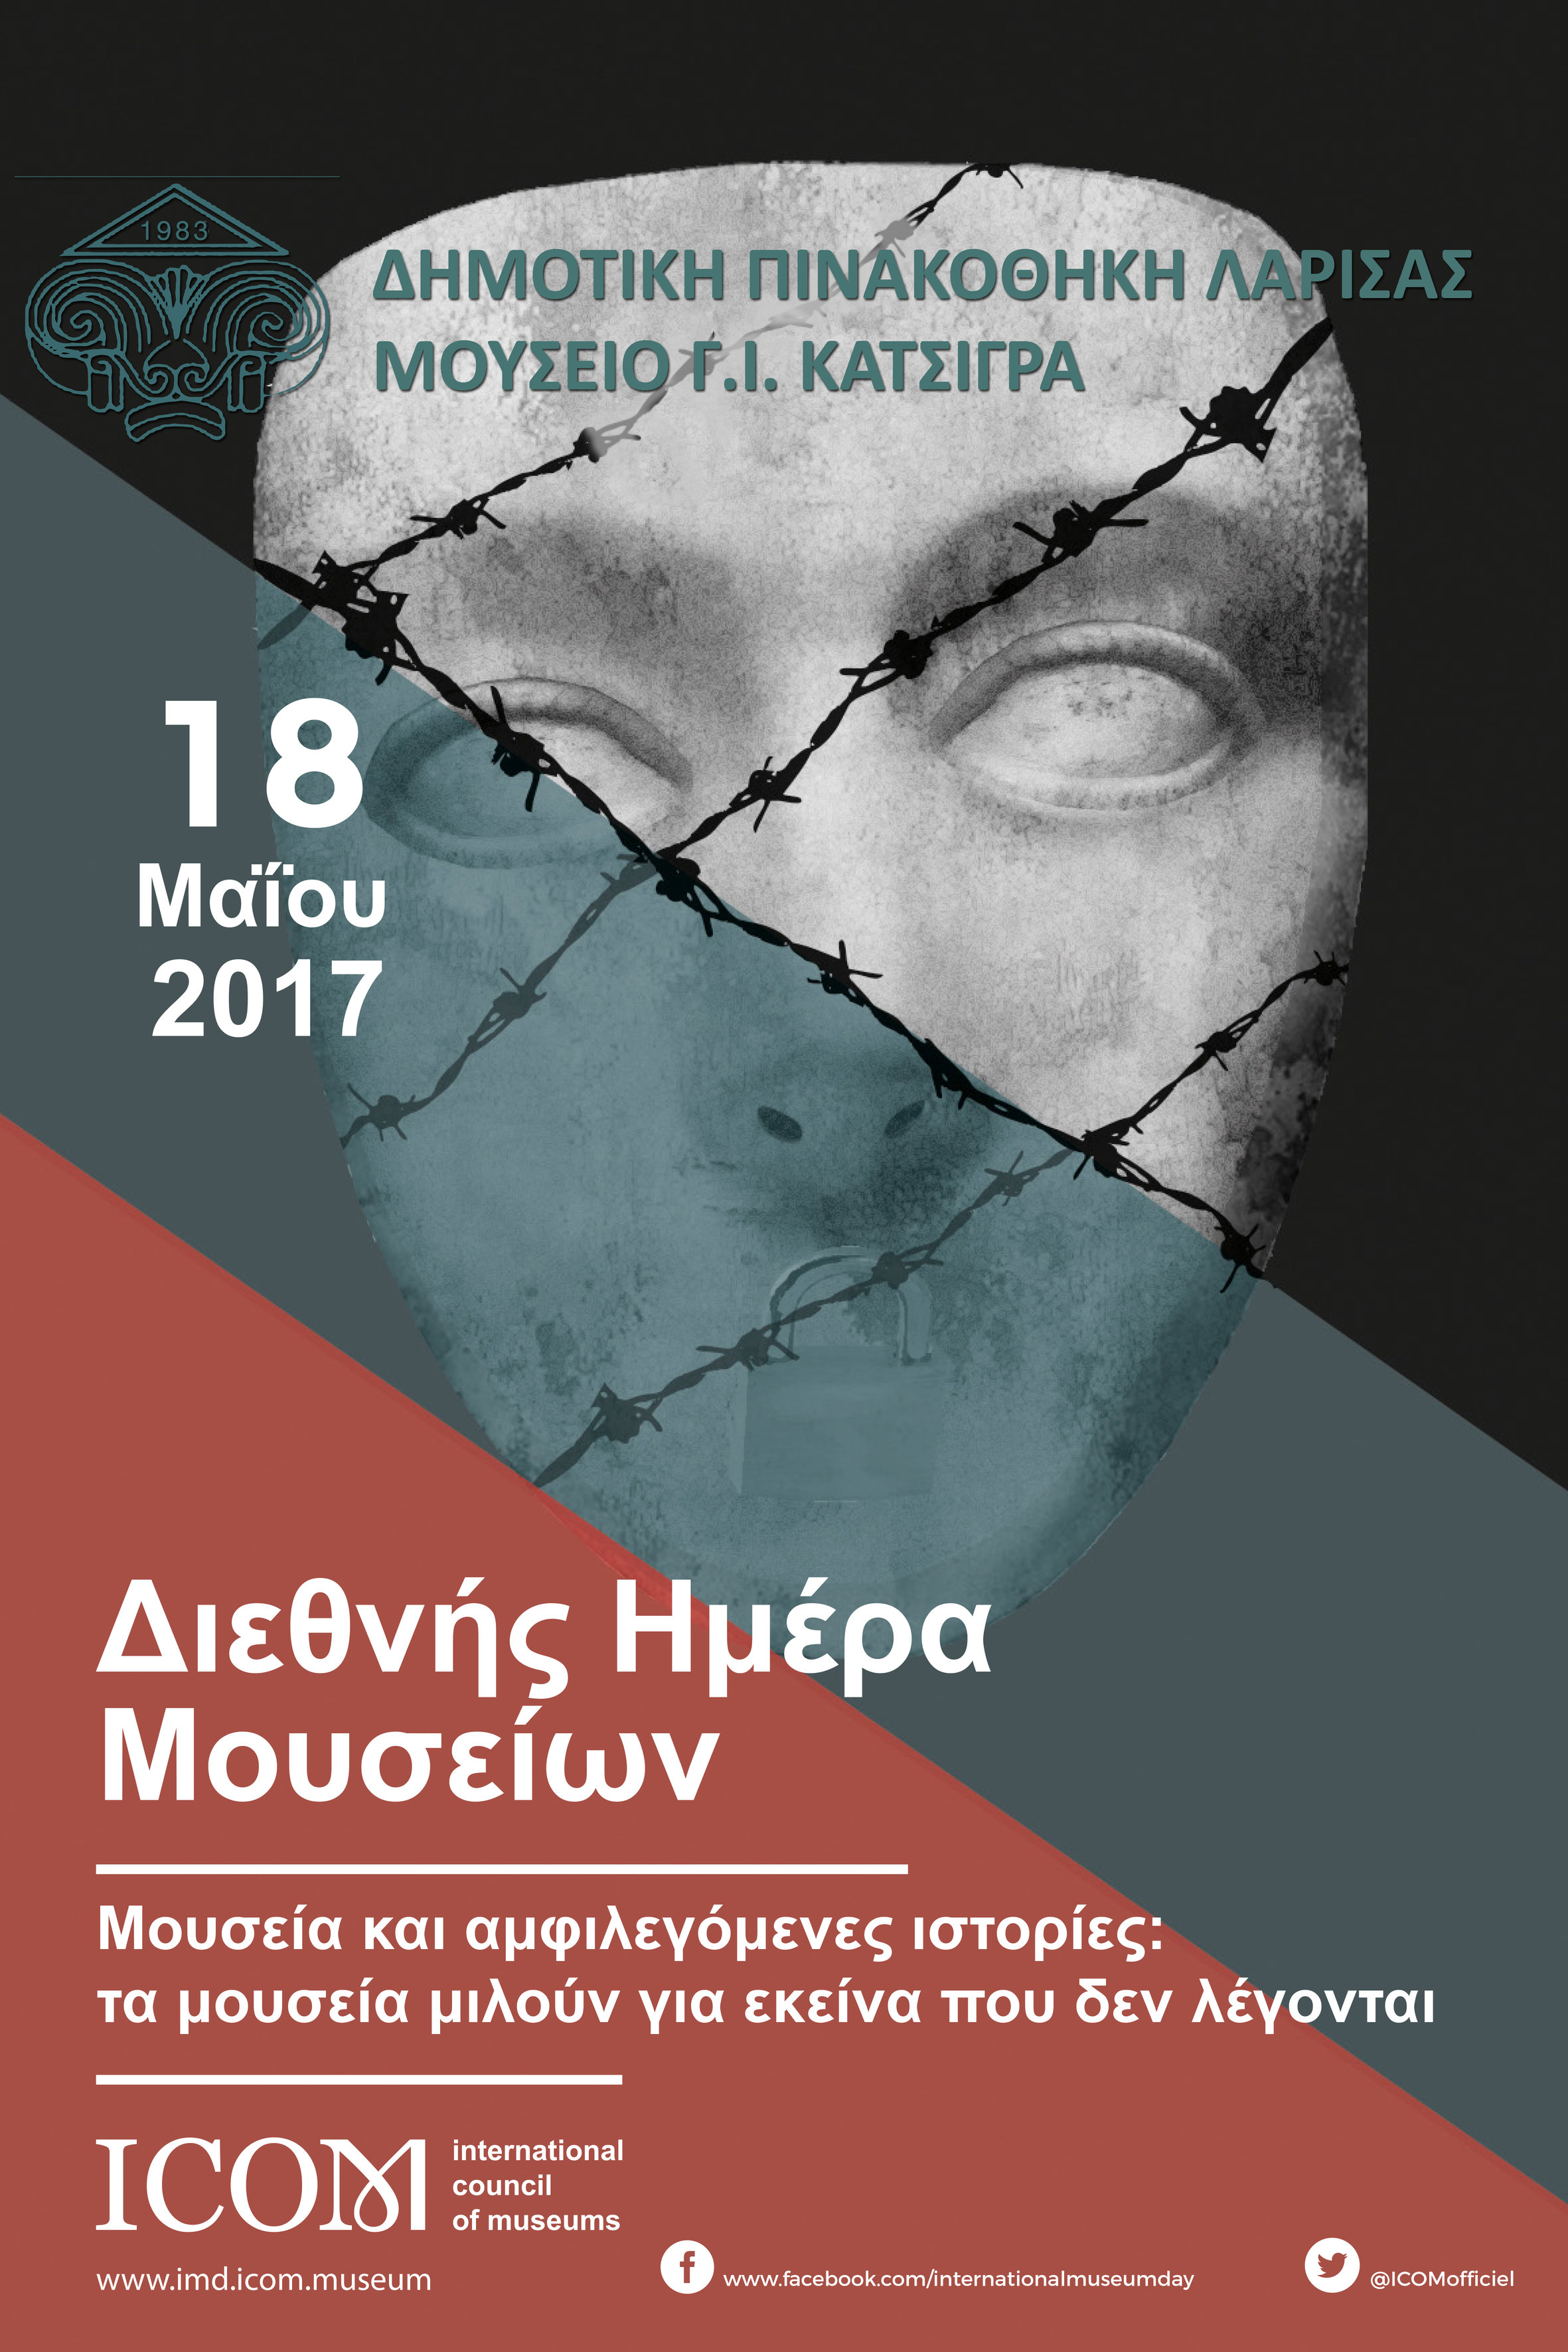 Για πρώτη φορά στην Ελλάδα έργα ενός μουσείου εκτίθενται σε φυλακές